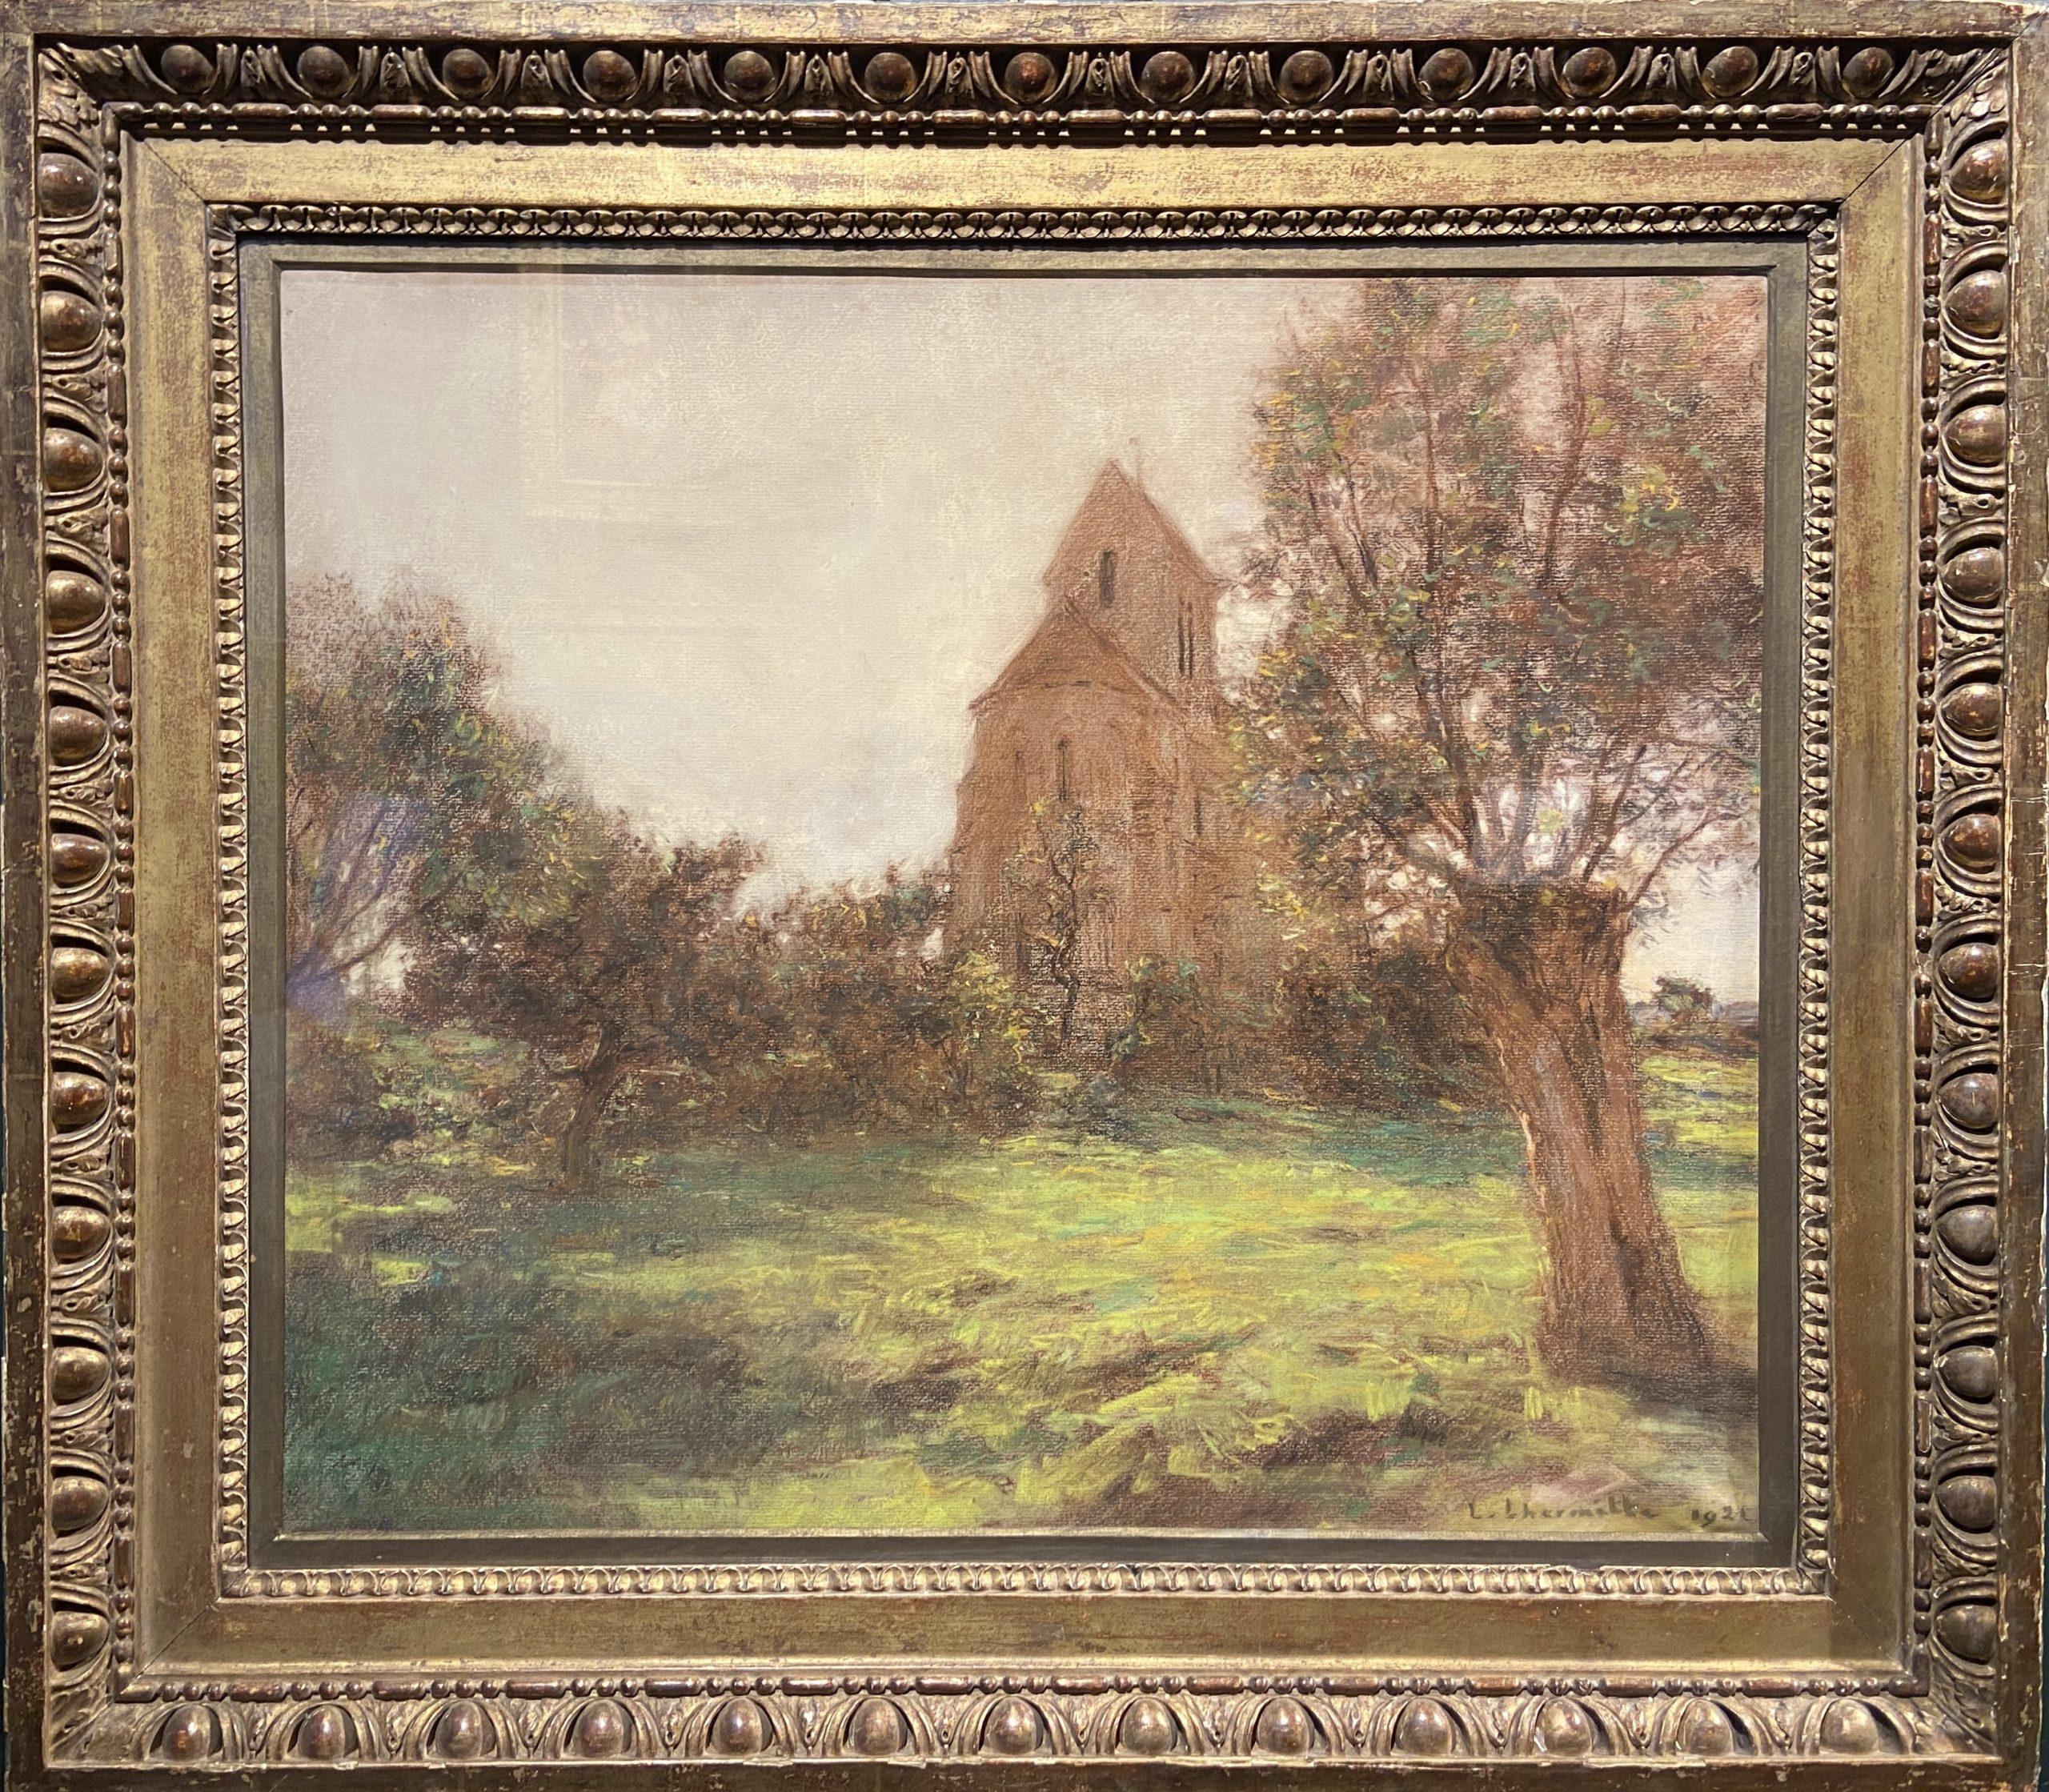 L'eglise de Mézy-Moulins, Pastel 19thC French Landscape, Signed and dated 1921 - Art by Léon Augustin Lhermitte